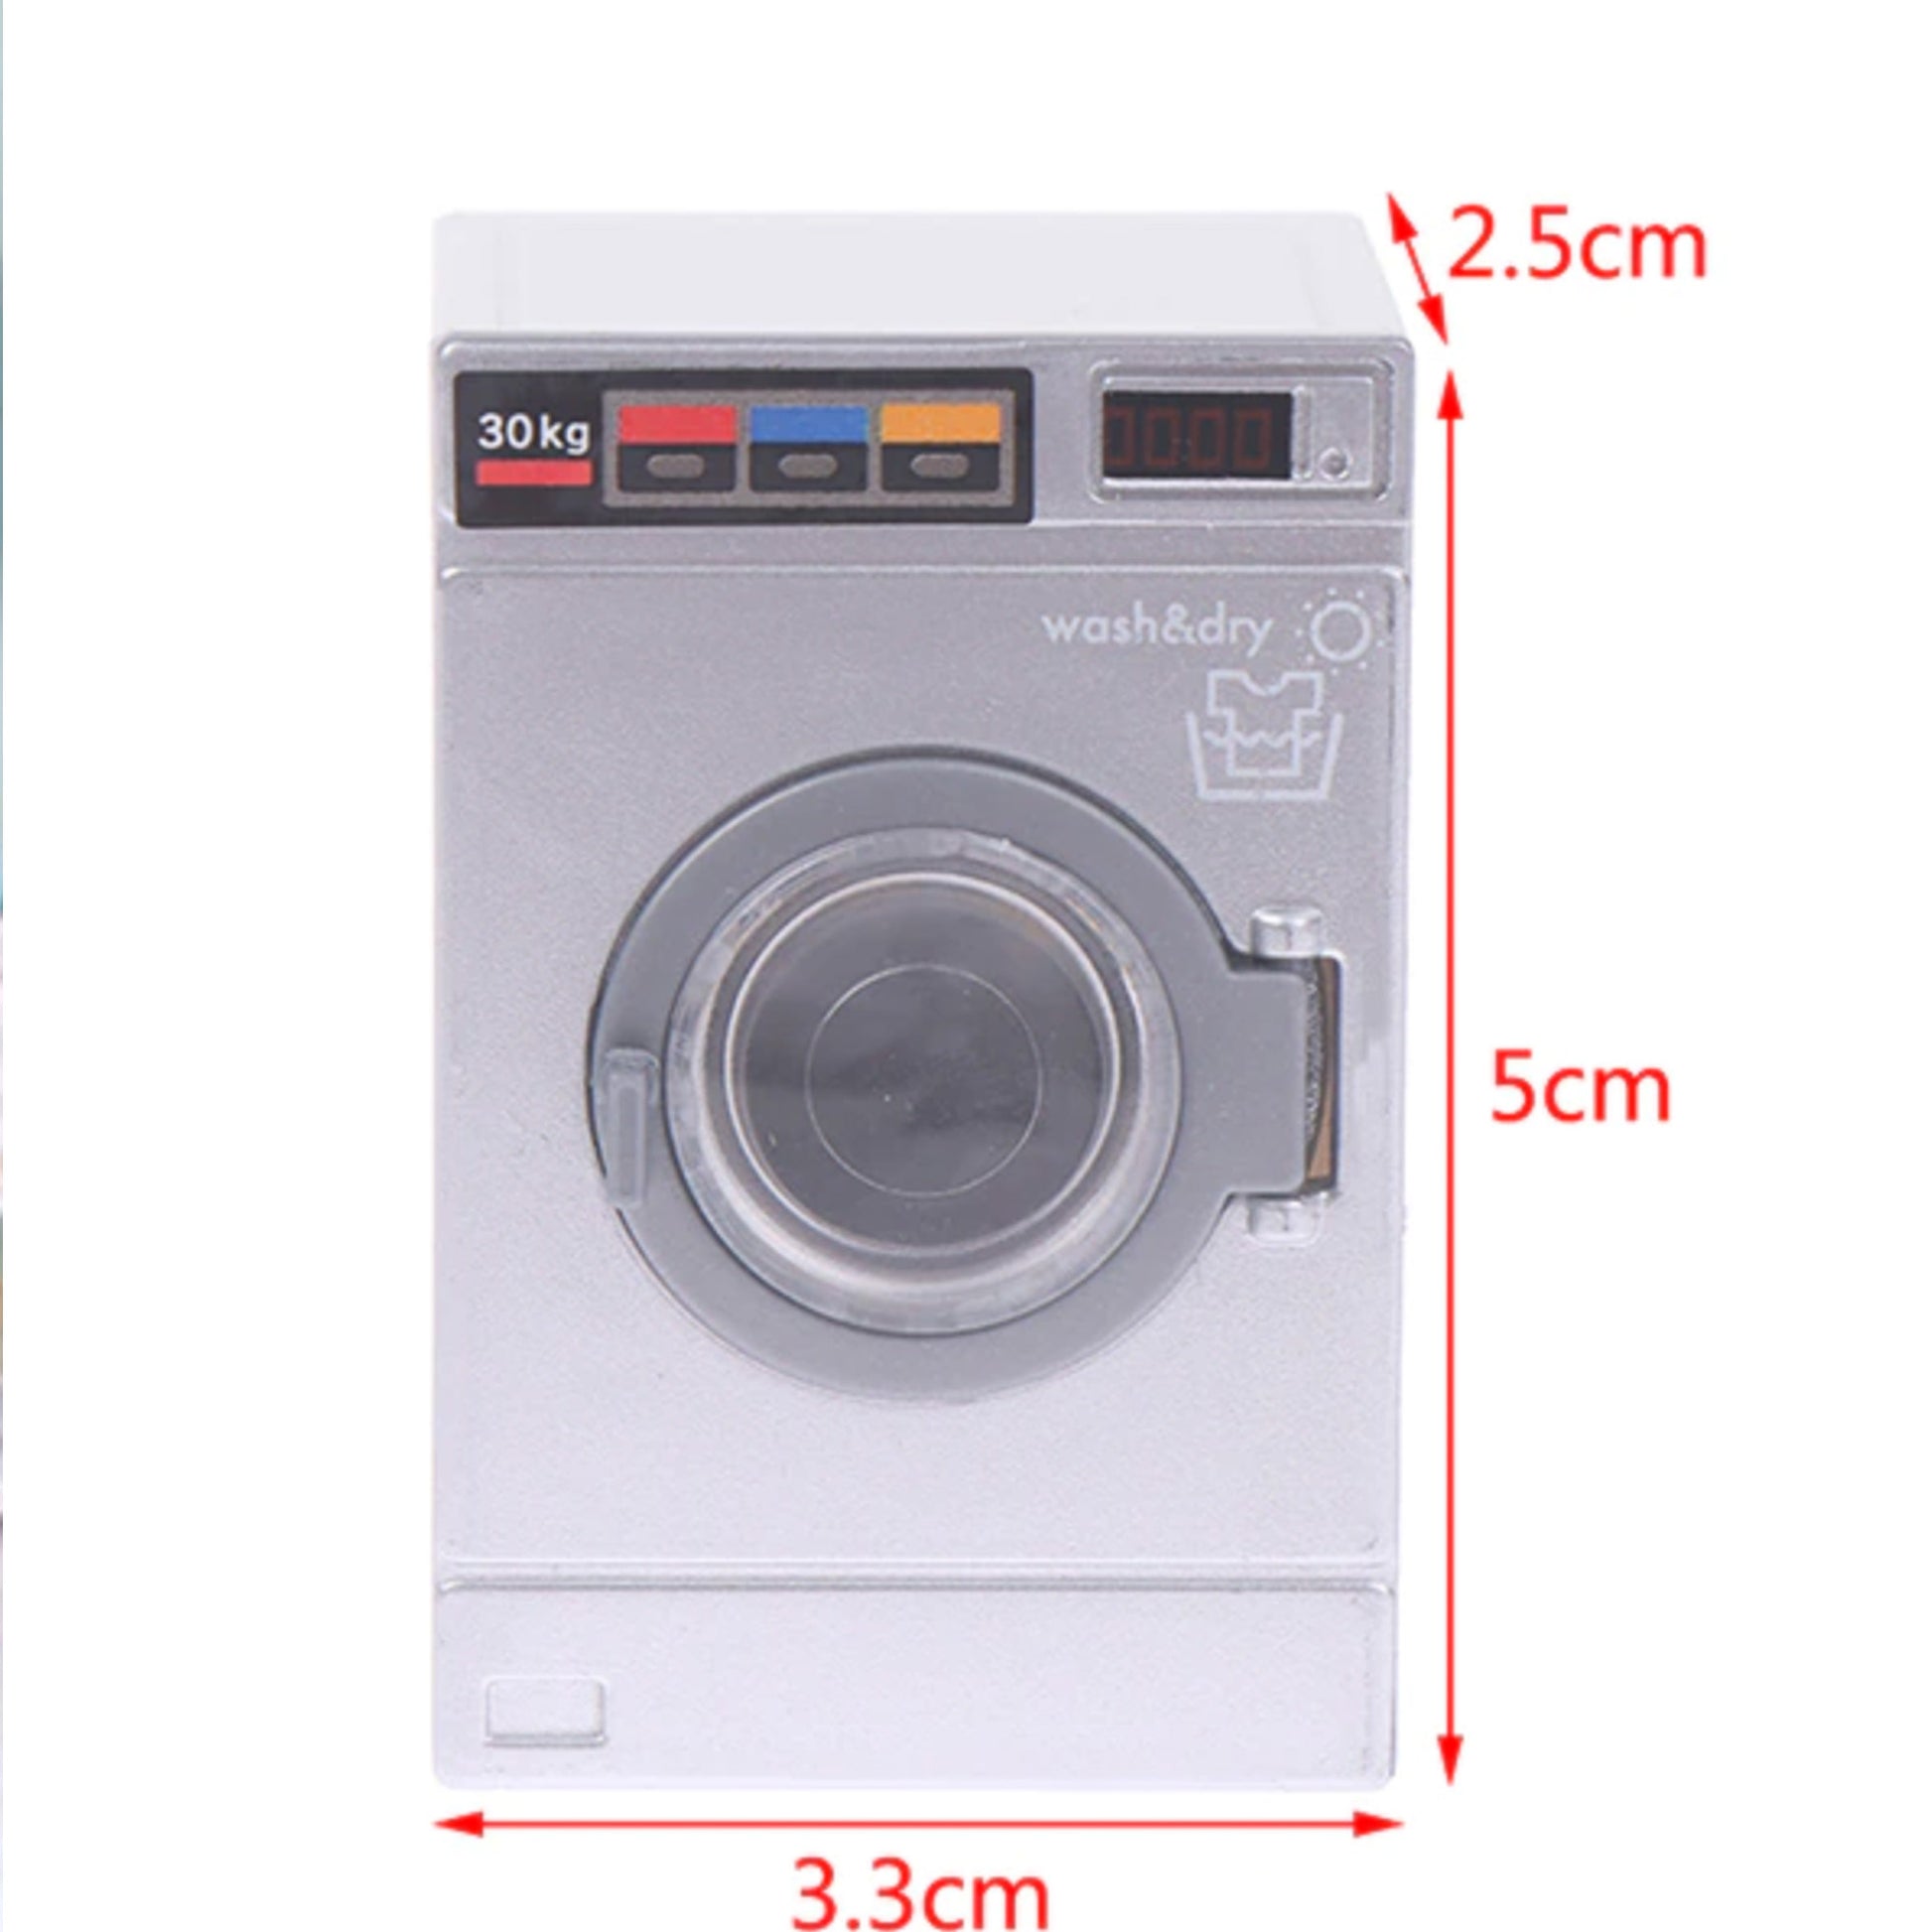 washing machine dollhouse size